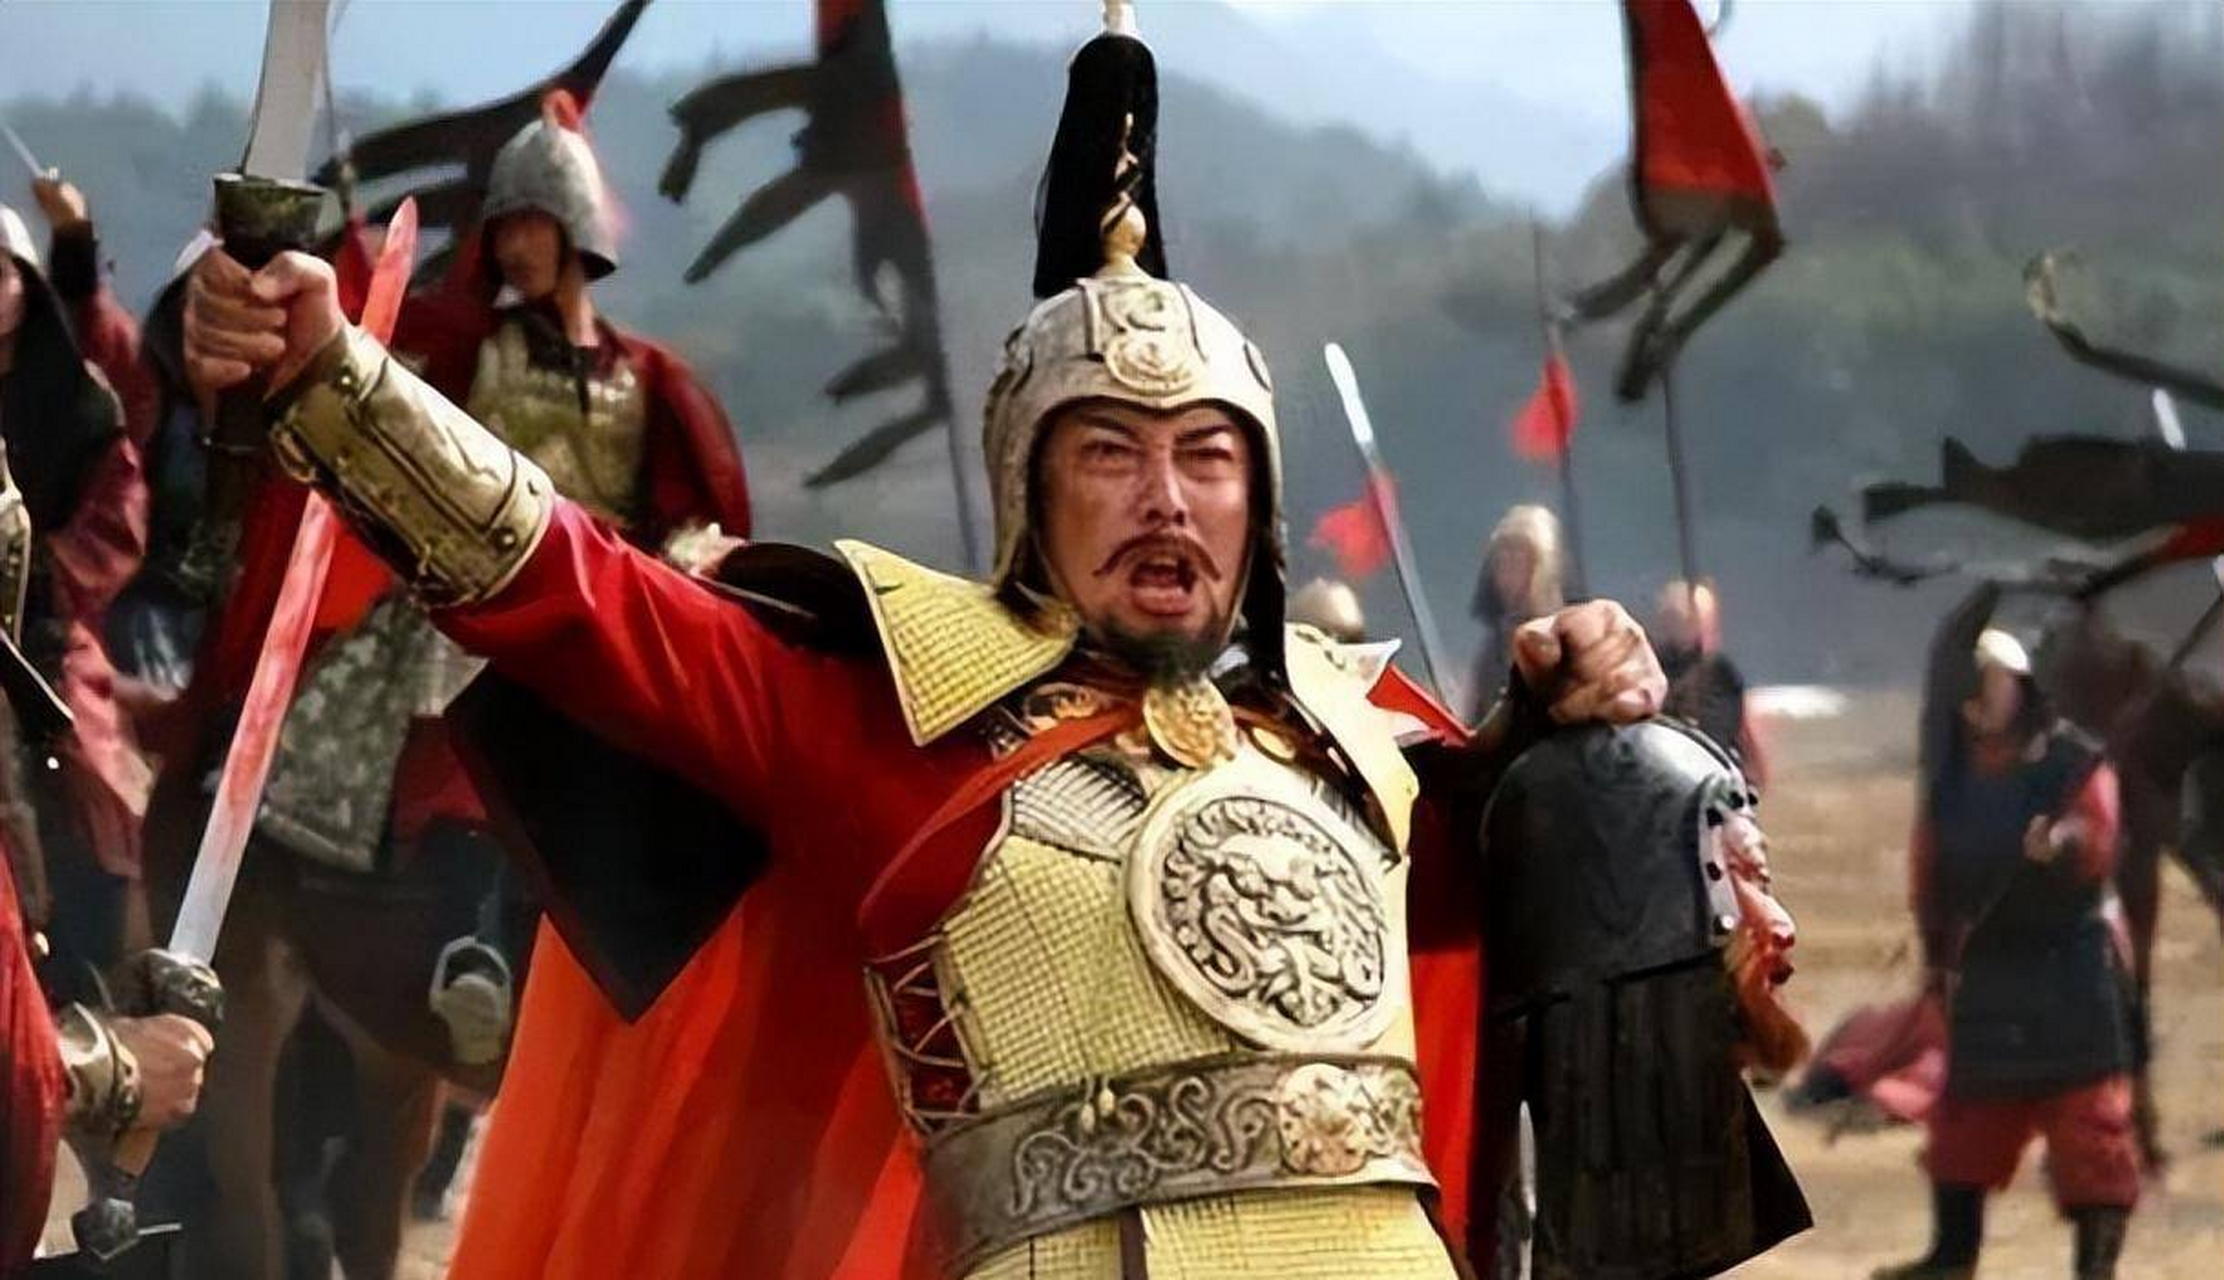 1388年,朱元璋的大将蓝玉扫灭北元,俘获了北元妃嫔,公主等众多女眷